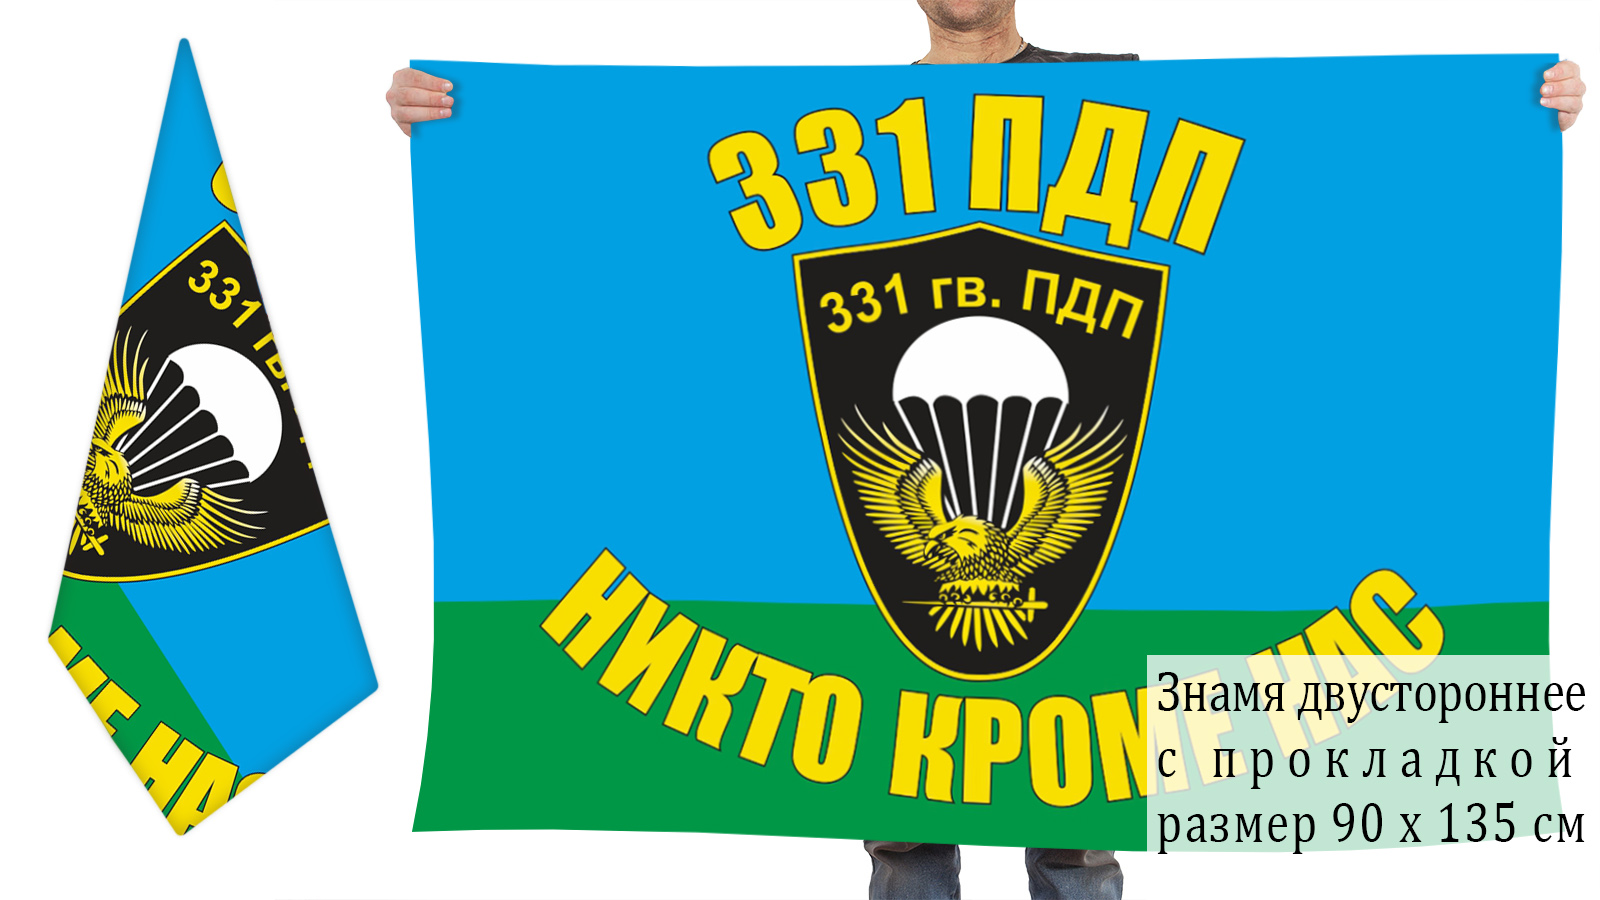 331 й гвардейский парашютно десантный ударный костромской полк